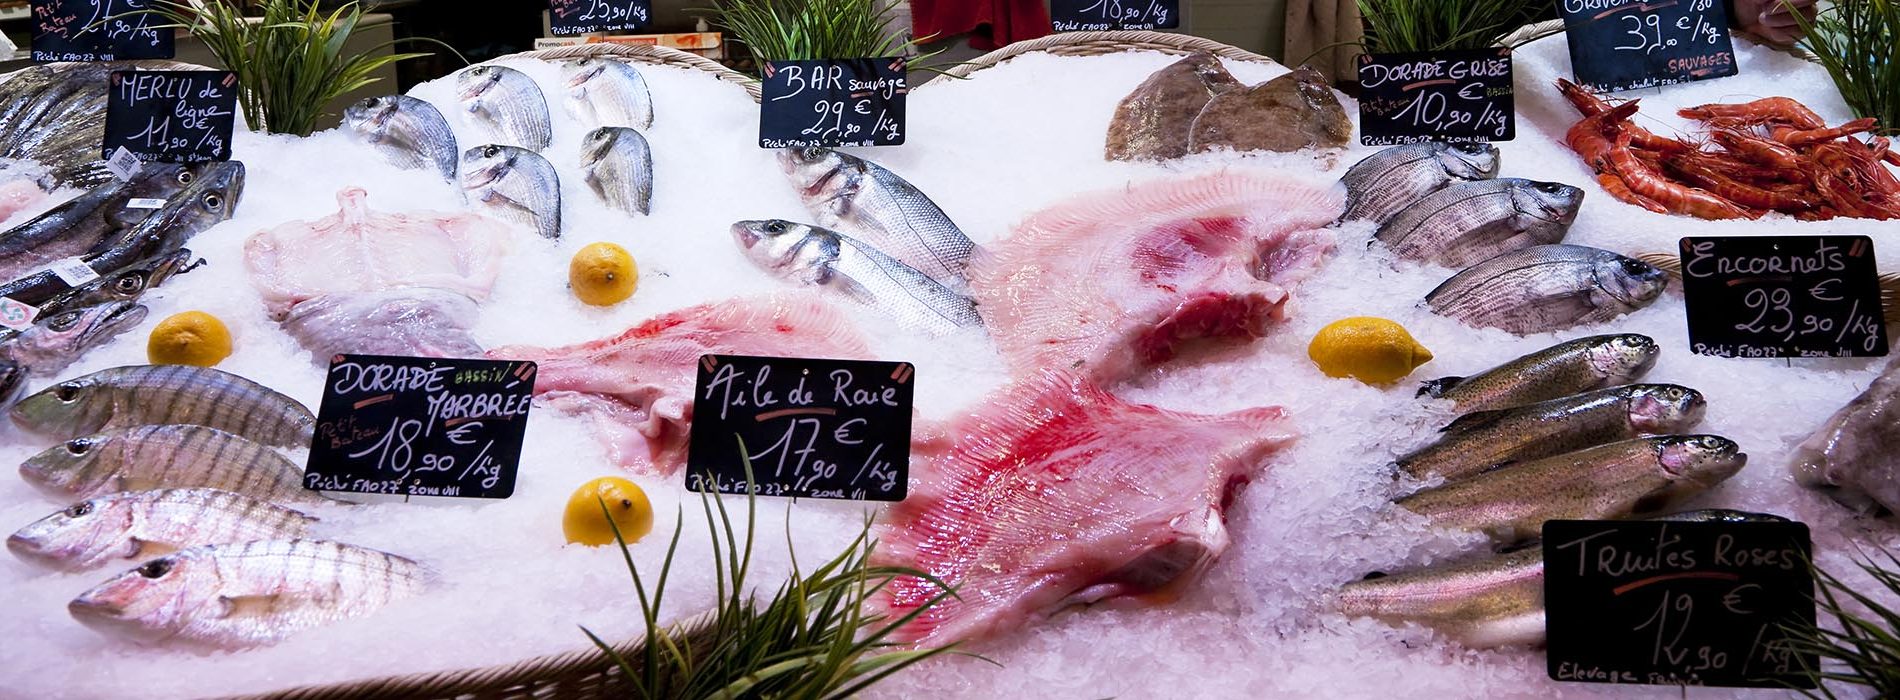 Etal de poissons frais au marché